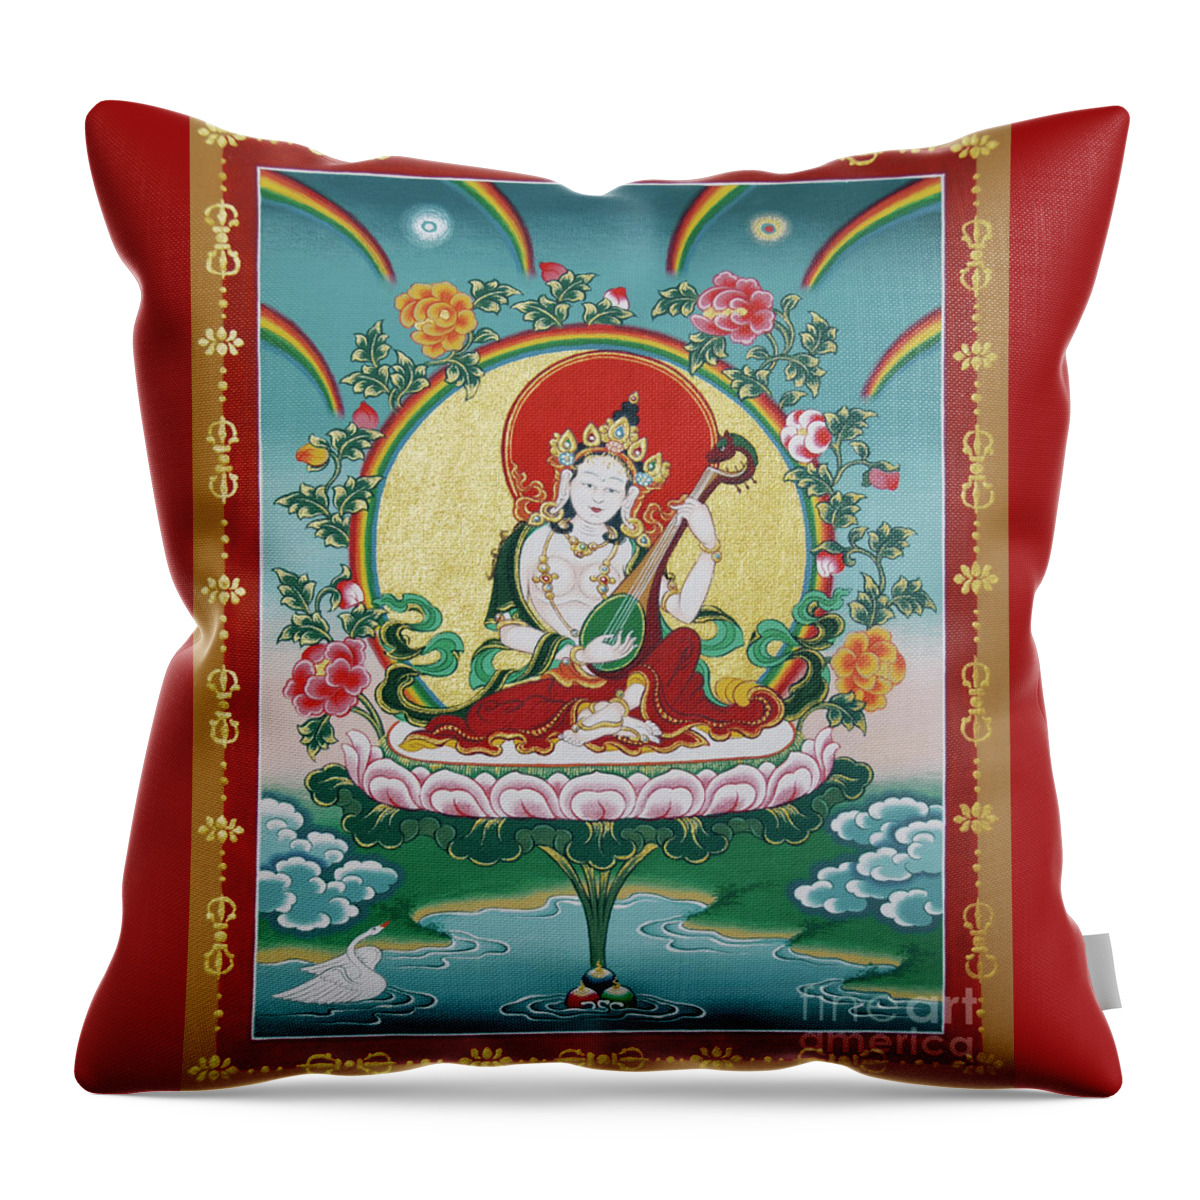 Shri Saraswati Throw Pillow featuring the painting Shri Saraswati - Goddess of Wisdom and Arts by Sergey Noskov